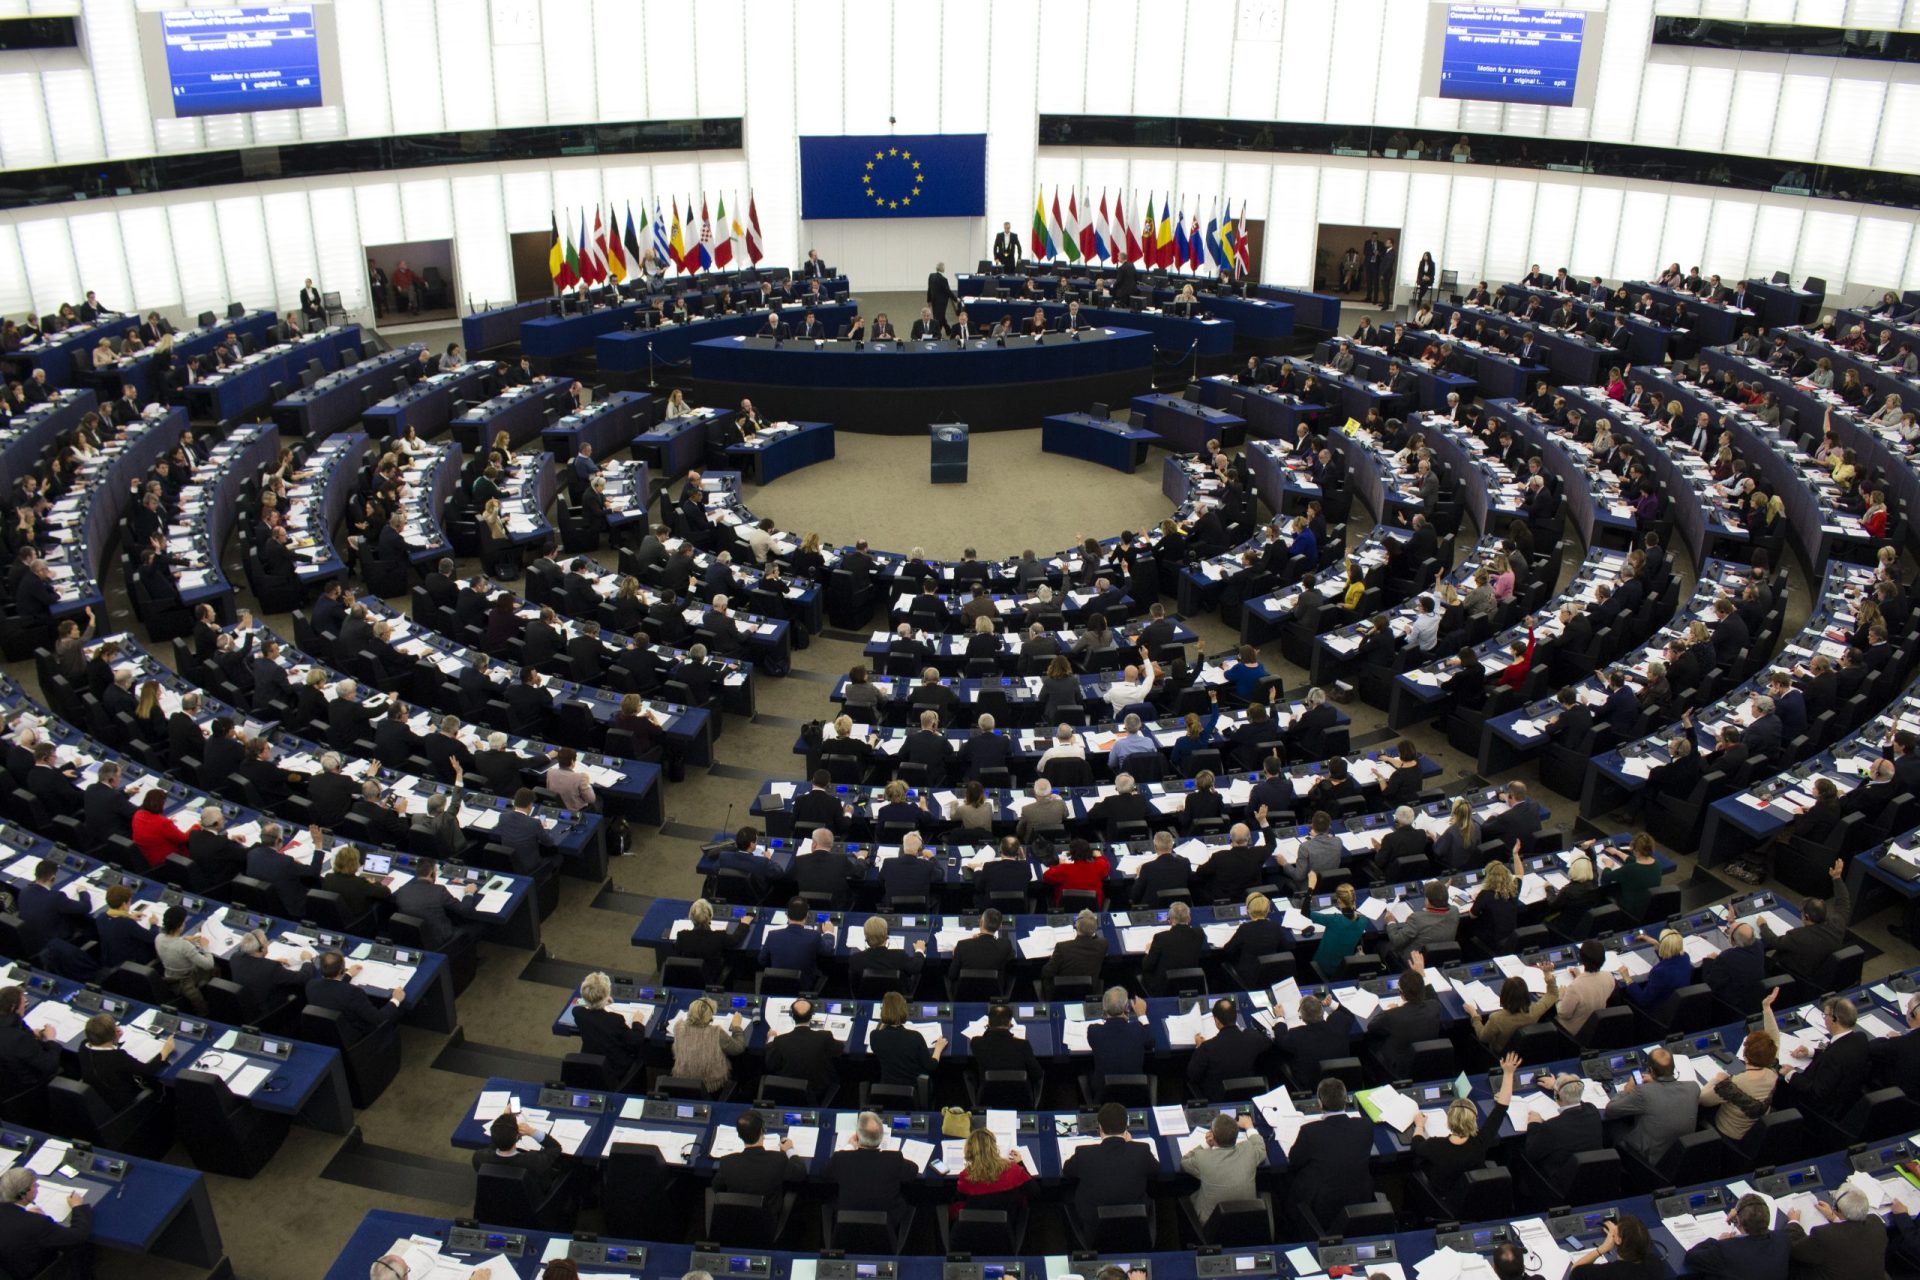 Europa. A nova composição do parlamento e o fim das listas transnacionais (por agora)